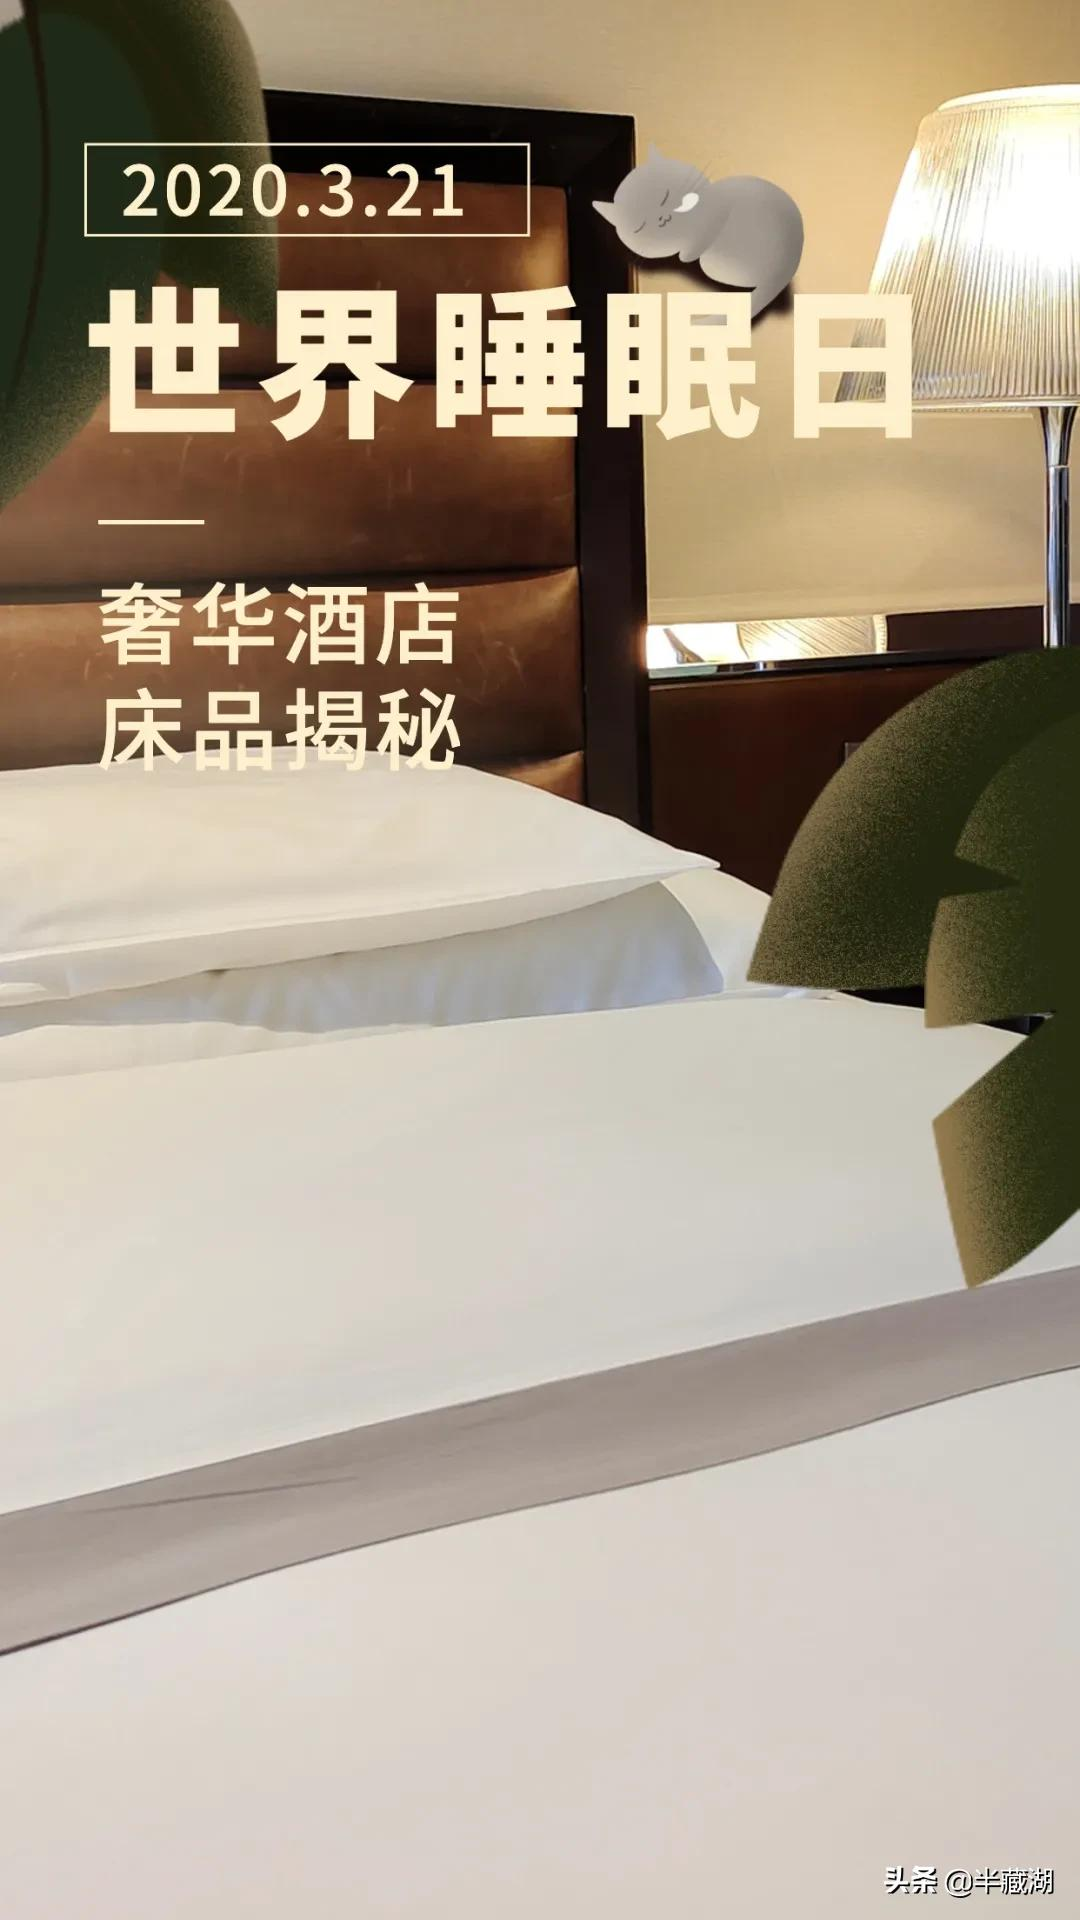 奢华酒店的床垫是怎么选的？想换床垫就跟着酒店买这些品牌吧